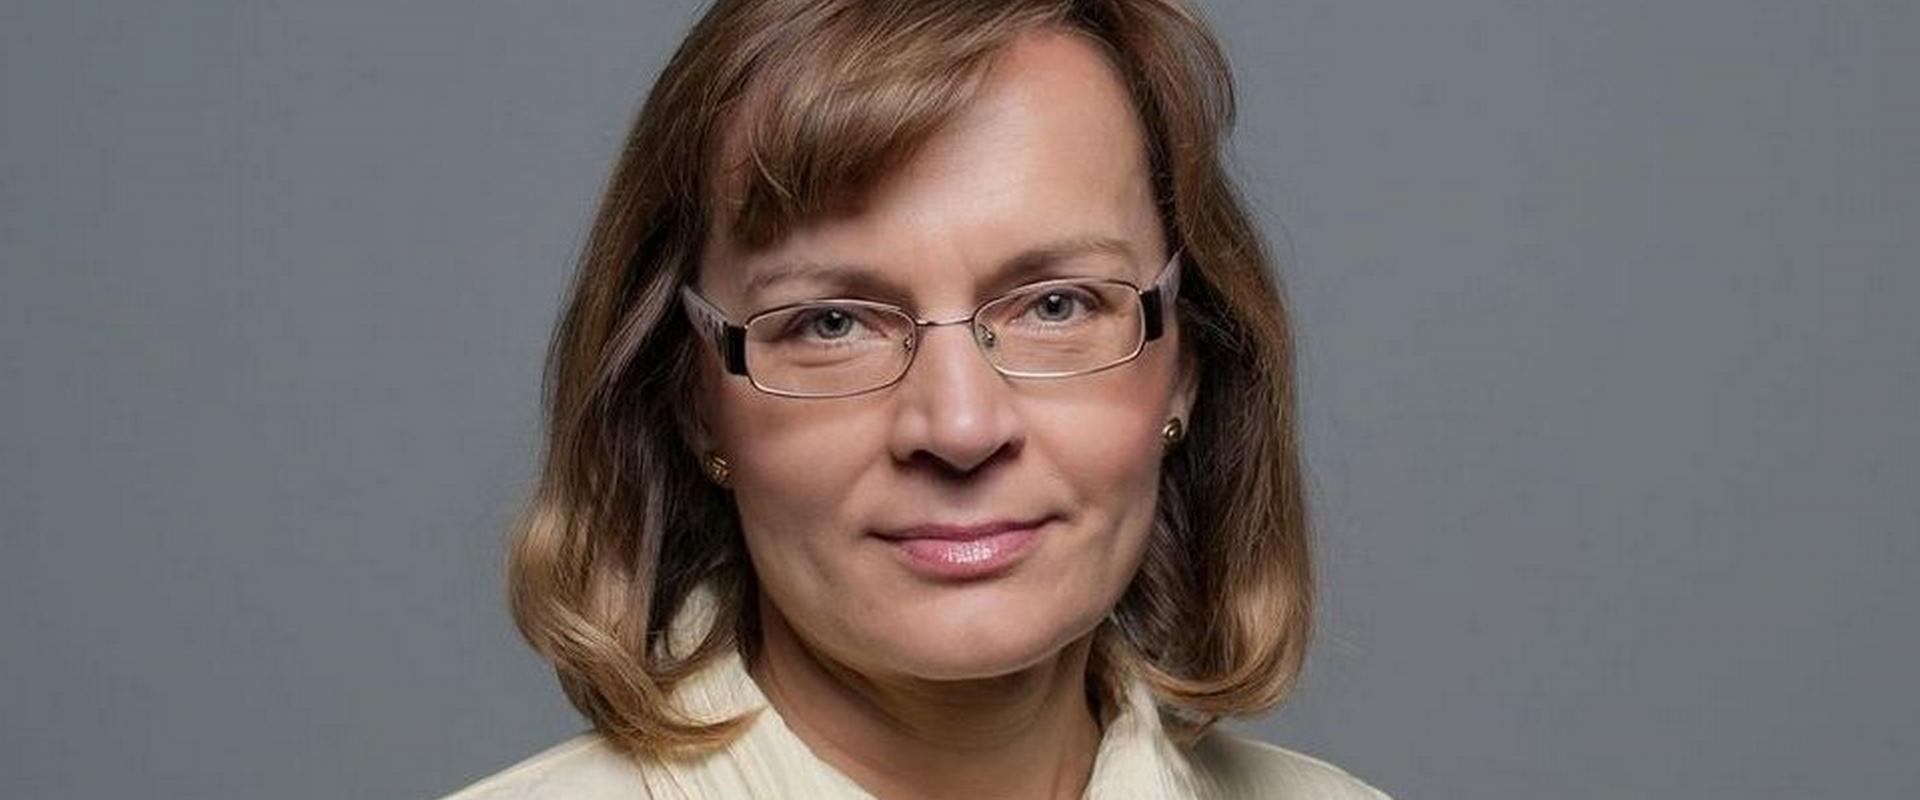 LCA 2020: Anita Błaszczak - Branża dla optymistów